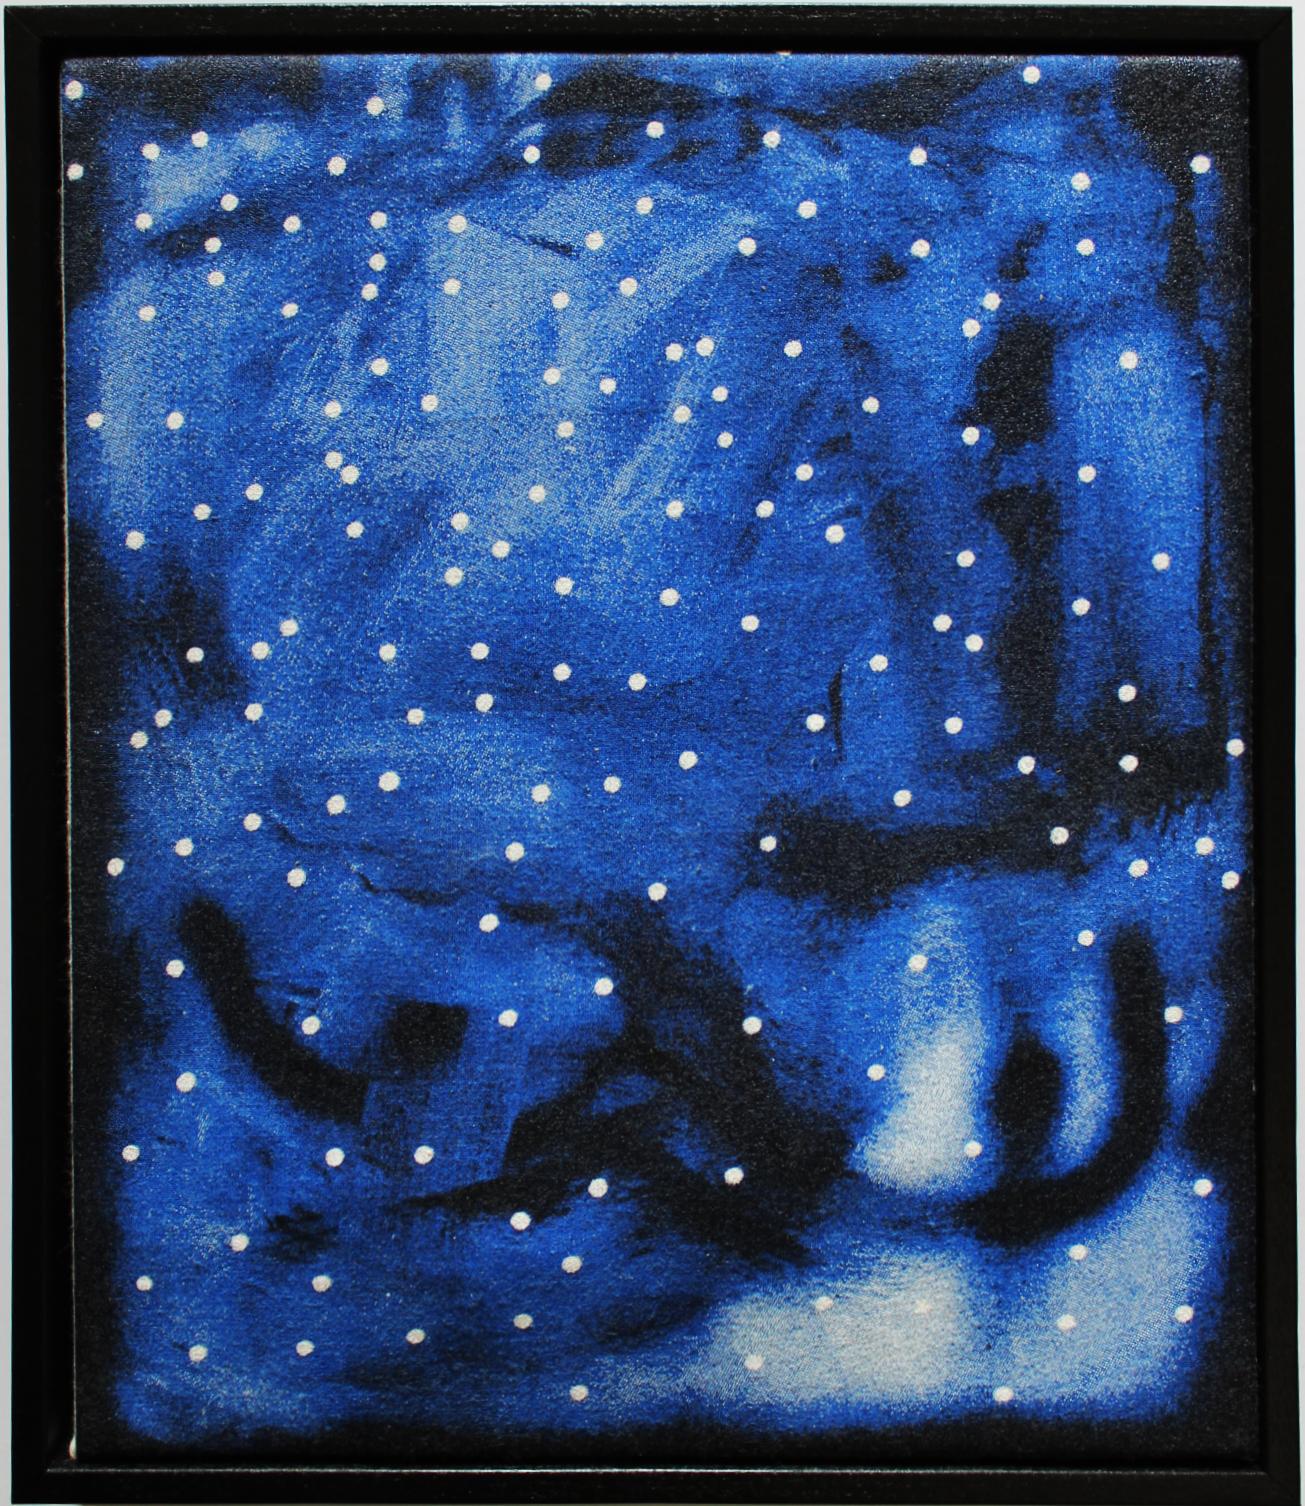 Bleu (édition limitée à 50 exemplaires, sac fourre-tout en toile tendue et encadrée), 2010